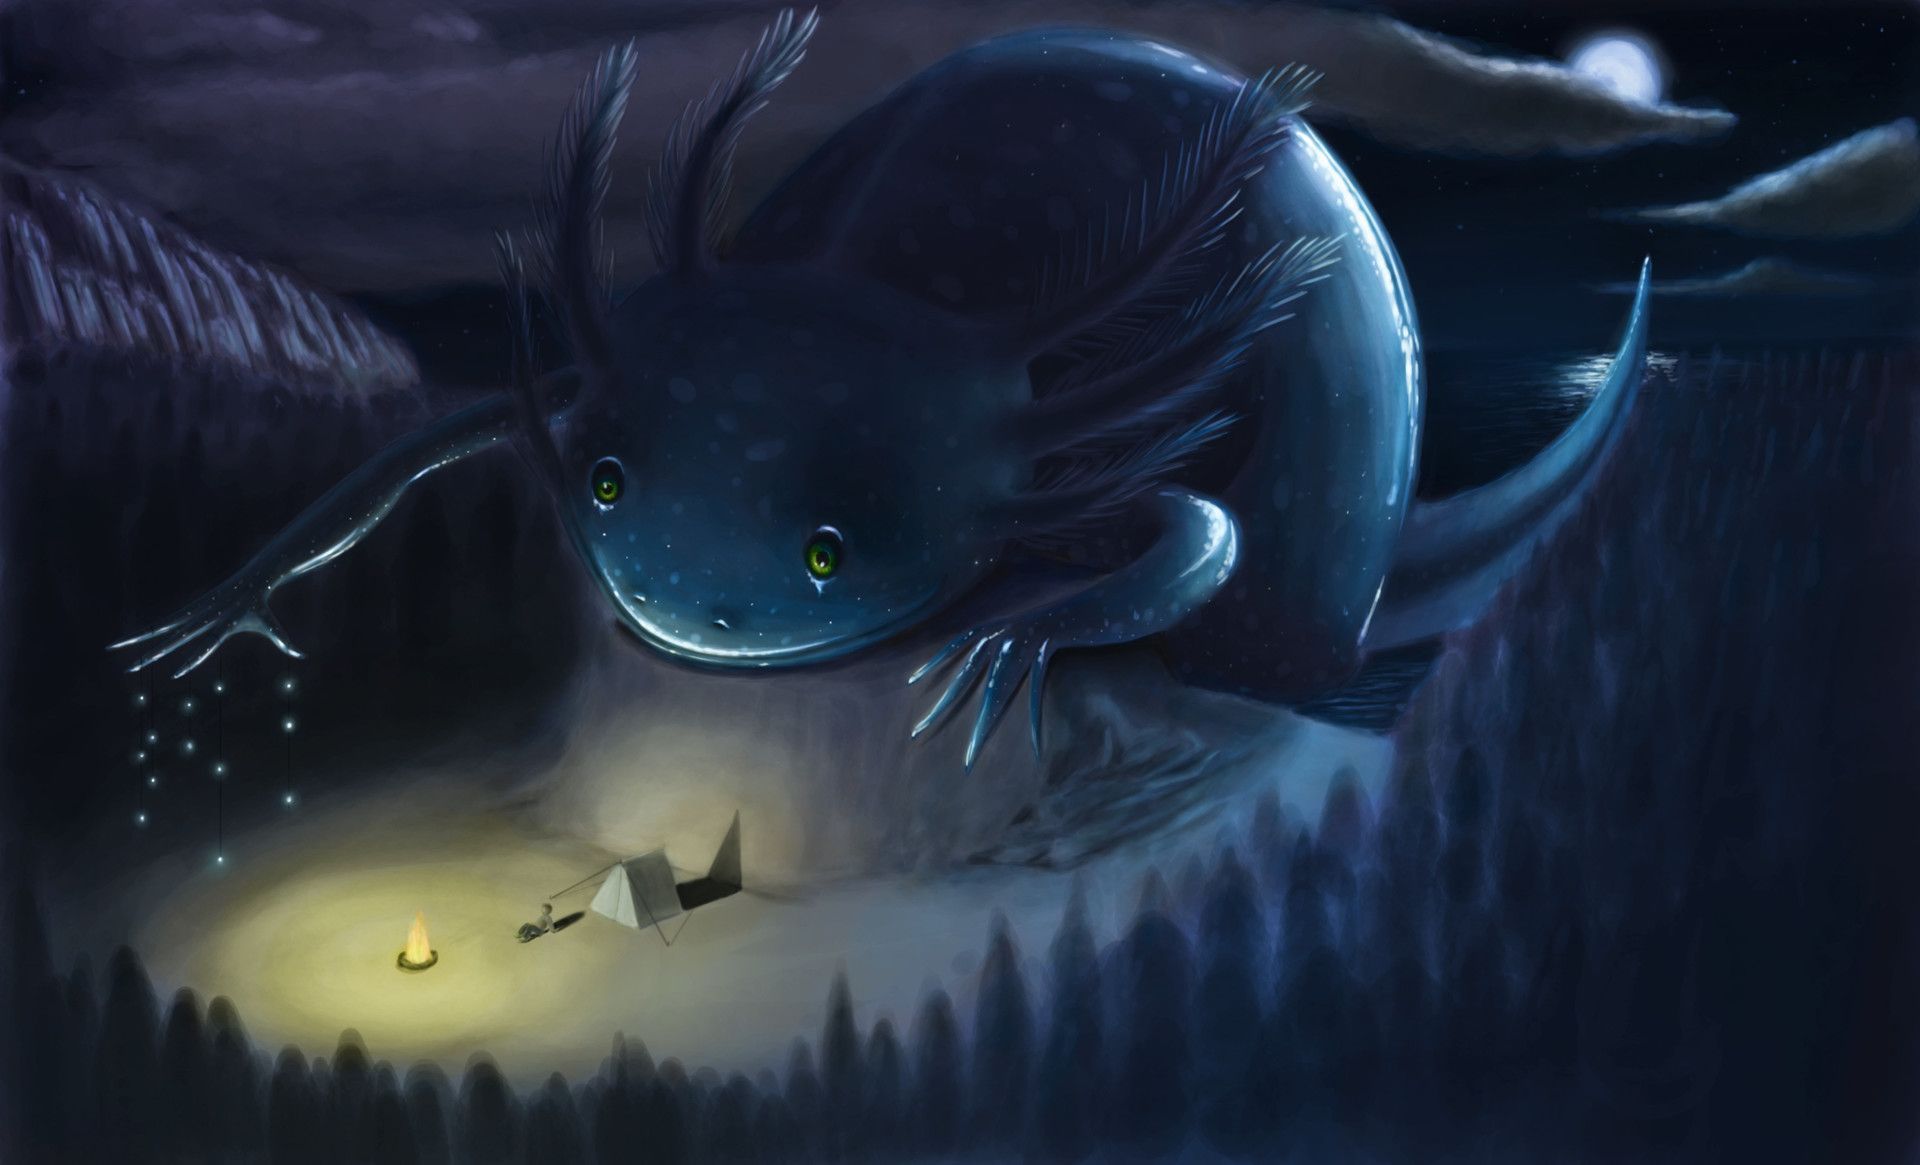 Axolotl Wallpaper. Axolotl, Creatures, Mystical creatures